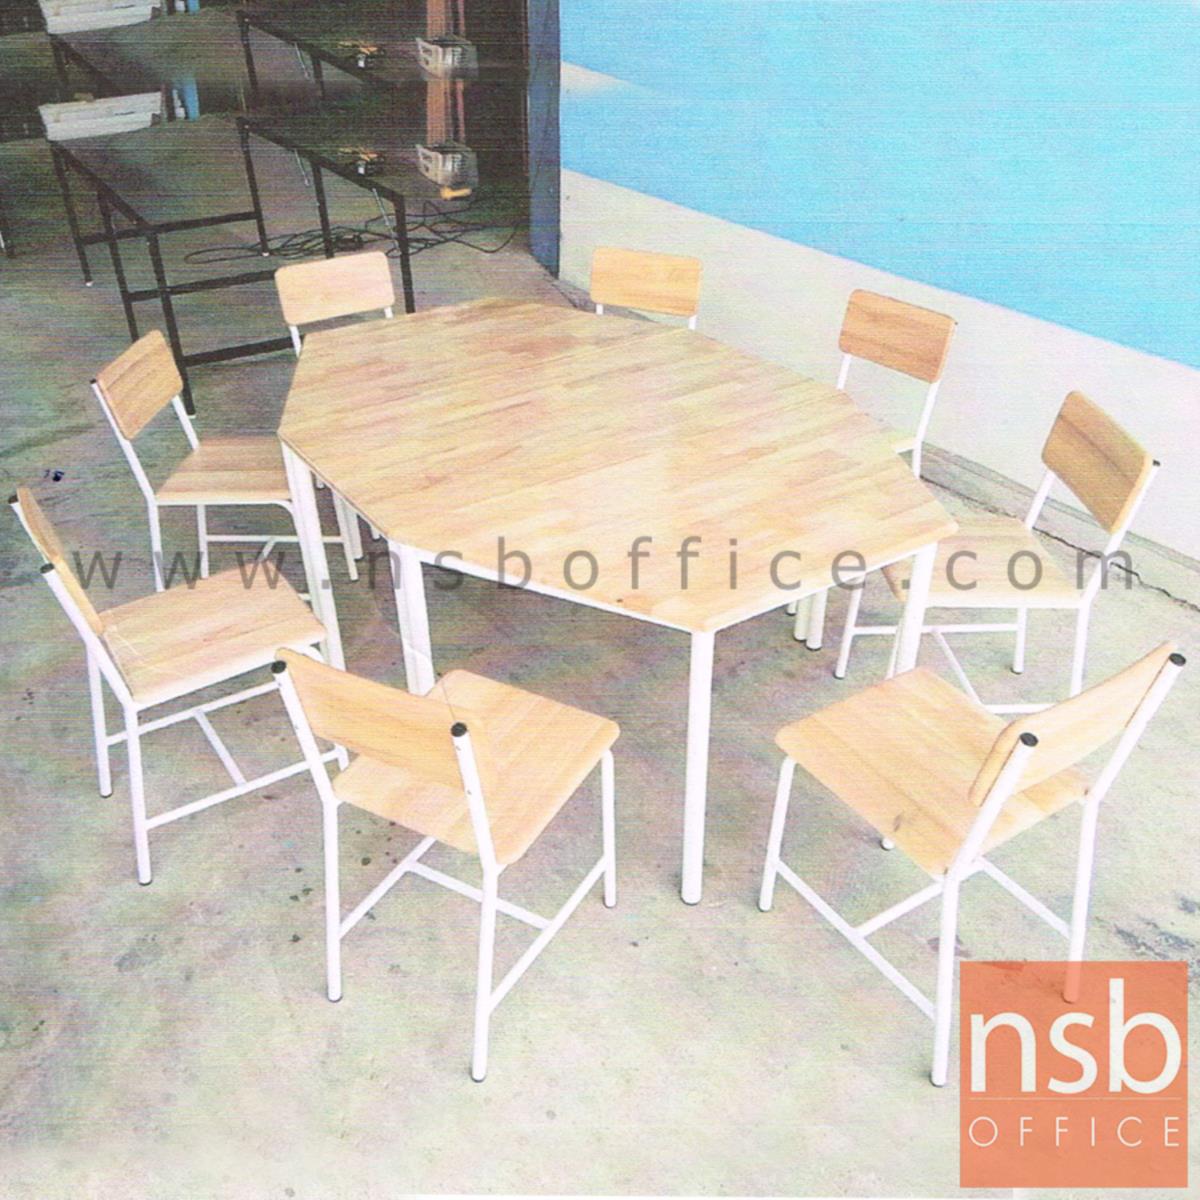 โต๊ะกิจกรรมเด็ก รุ่น LEARNIG แปดเหลี่ยม (ประกอบด้วยโต๊ะสี่เหลี่ยมและคางหมู) โครงขาสีขาว